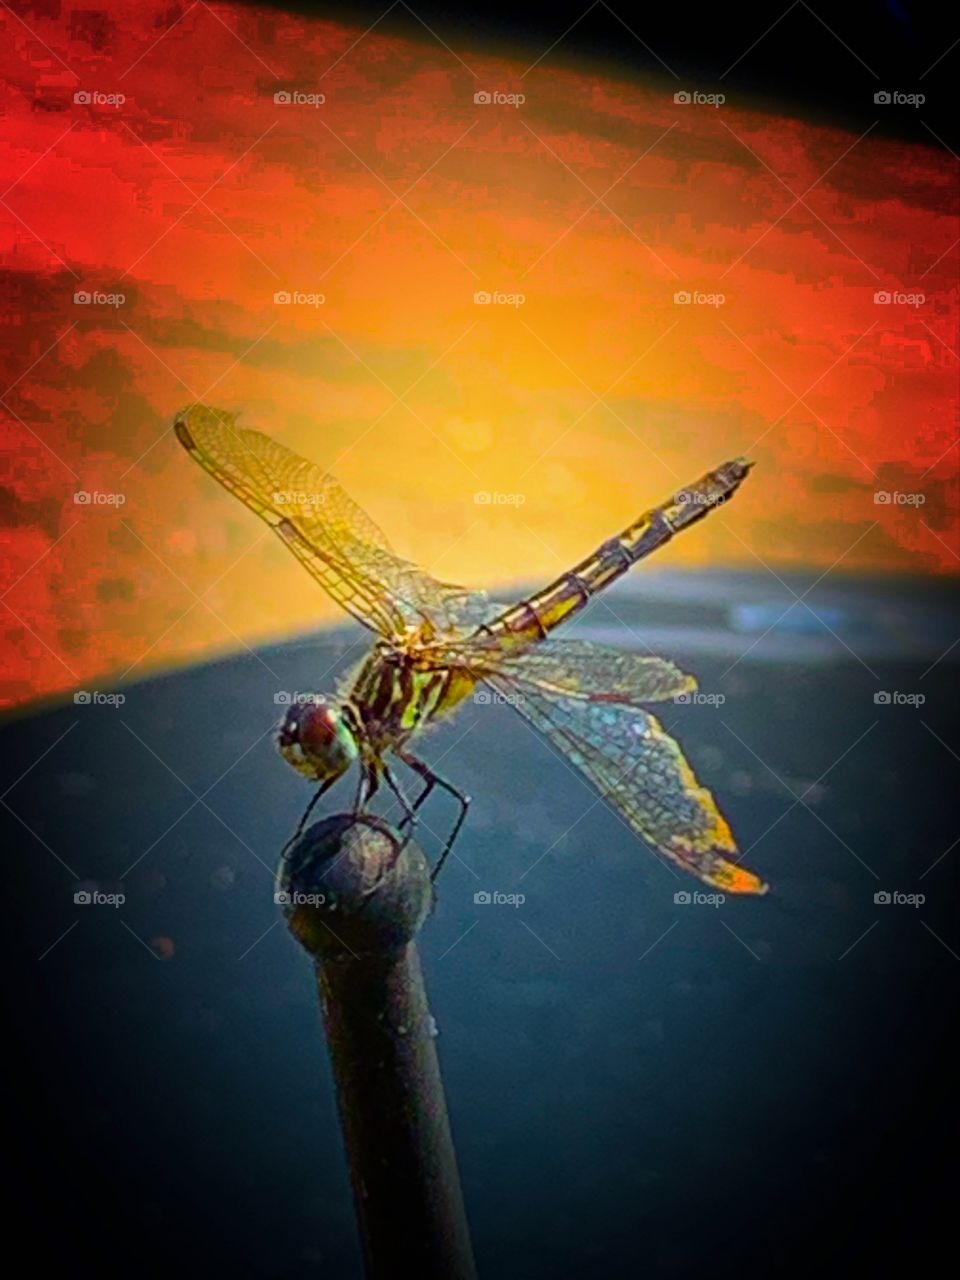 dragonfly sitting on a car antenna